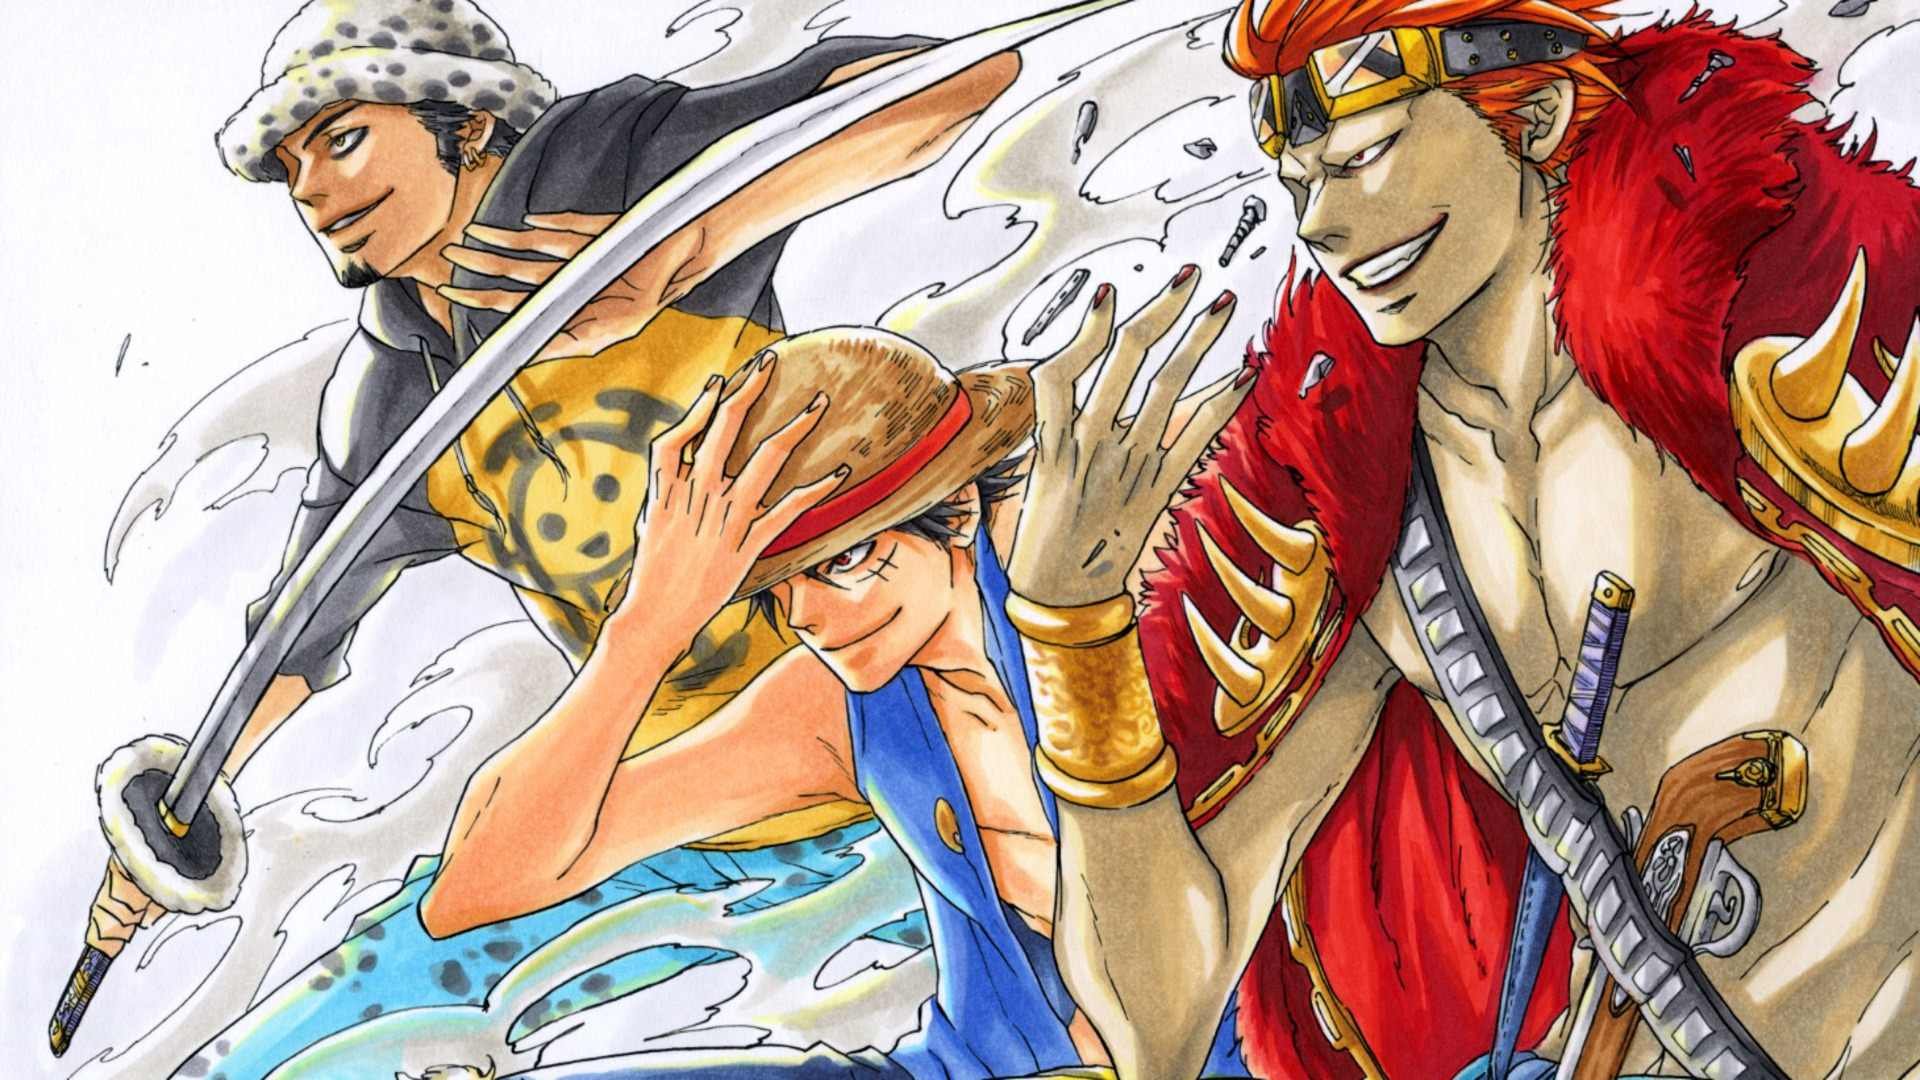 One Piece: Một chuyến phiêu lưu đầy mạo hiểm trên đại dương cùng với các nhân vật phong phú và đặc biệt của bộ truyện tranh One Piece. Người hâm mộ sẽ đắm mình trong câu chuyện ly kỳ này, với nhiều tình huống hài hước và cảm động.